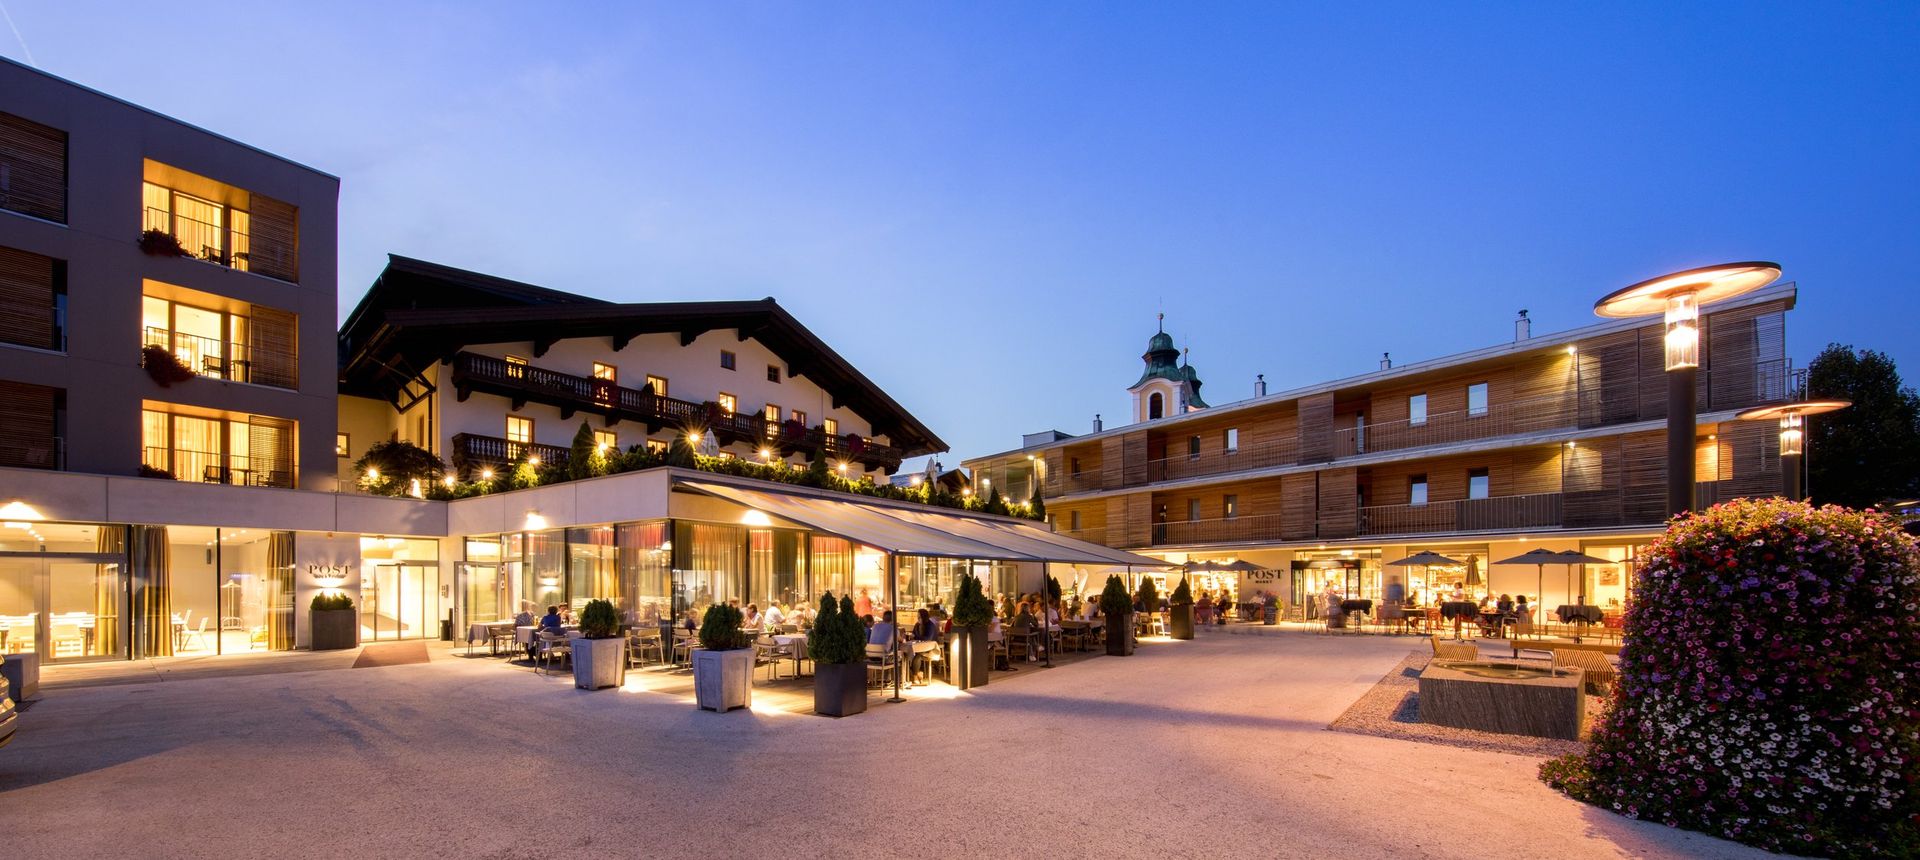 POST Hotel & Wirtshaus günstig / St. Johann in Tirol Last-Minute